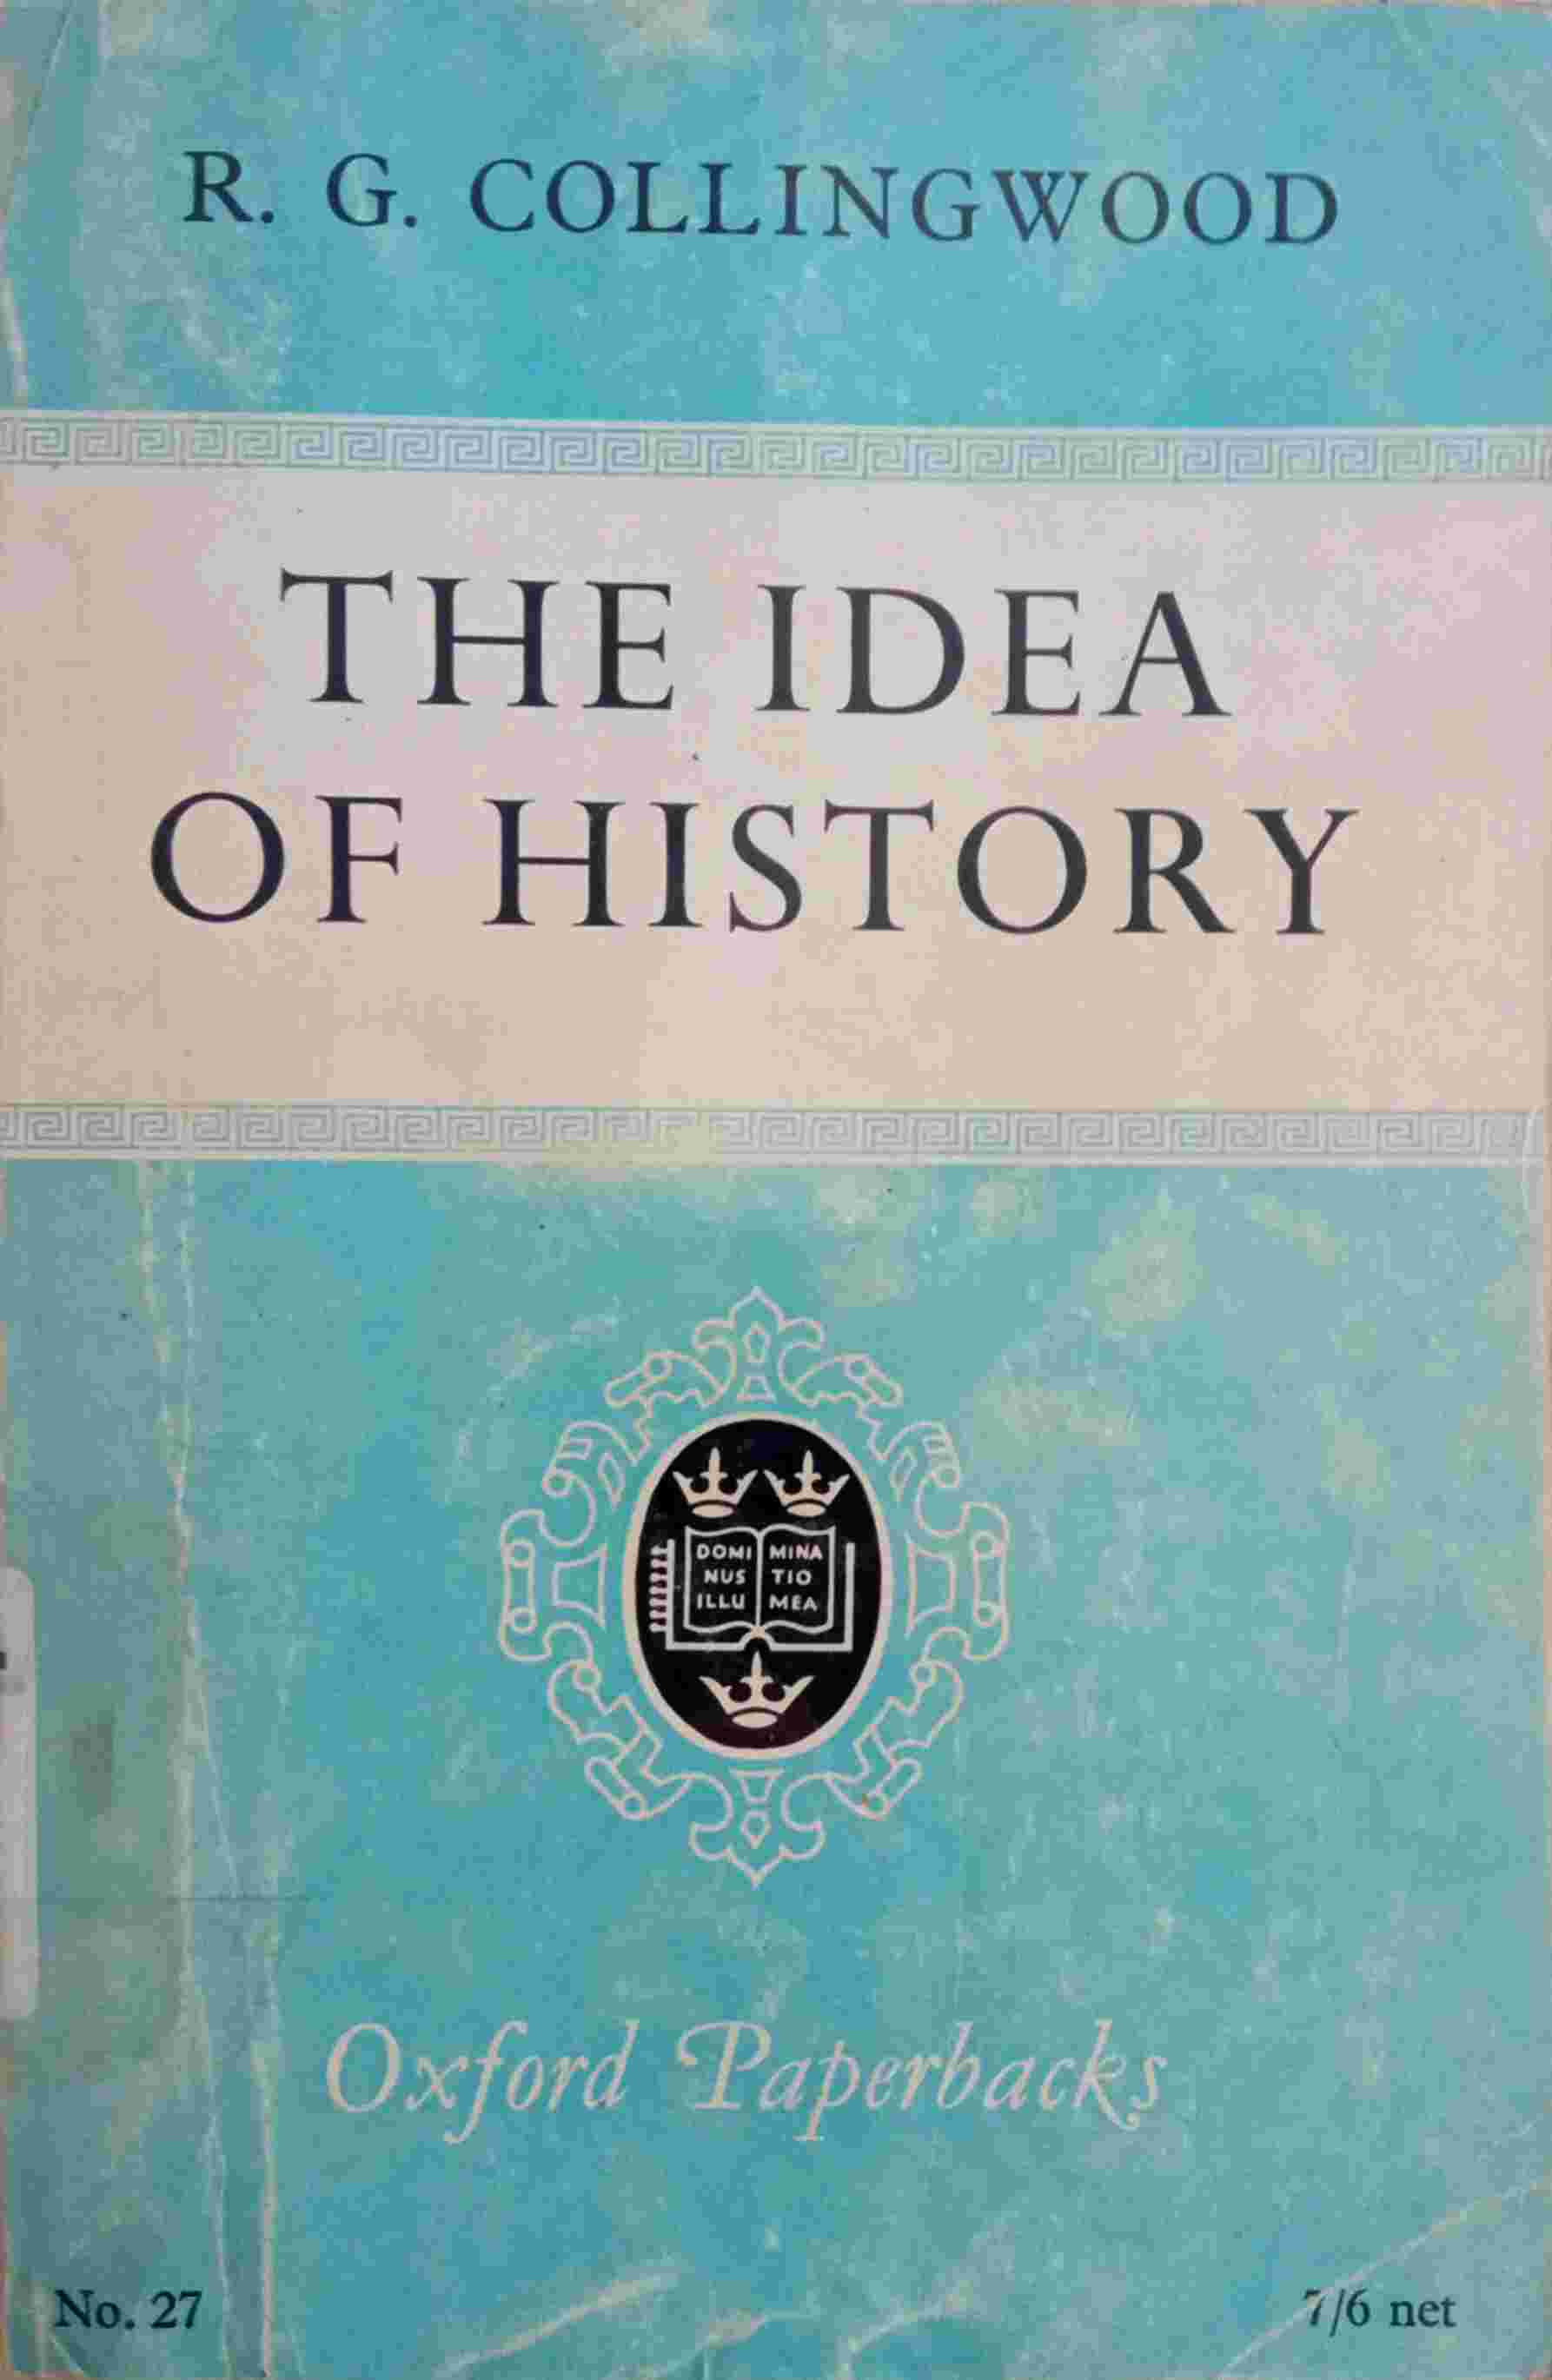 THE IDEA OF HISTORY